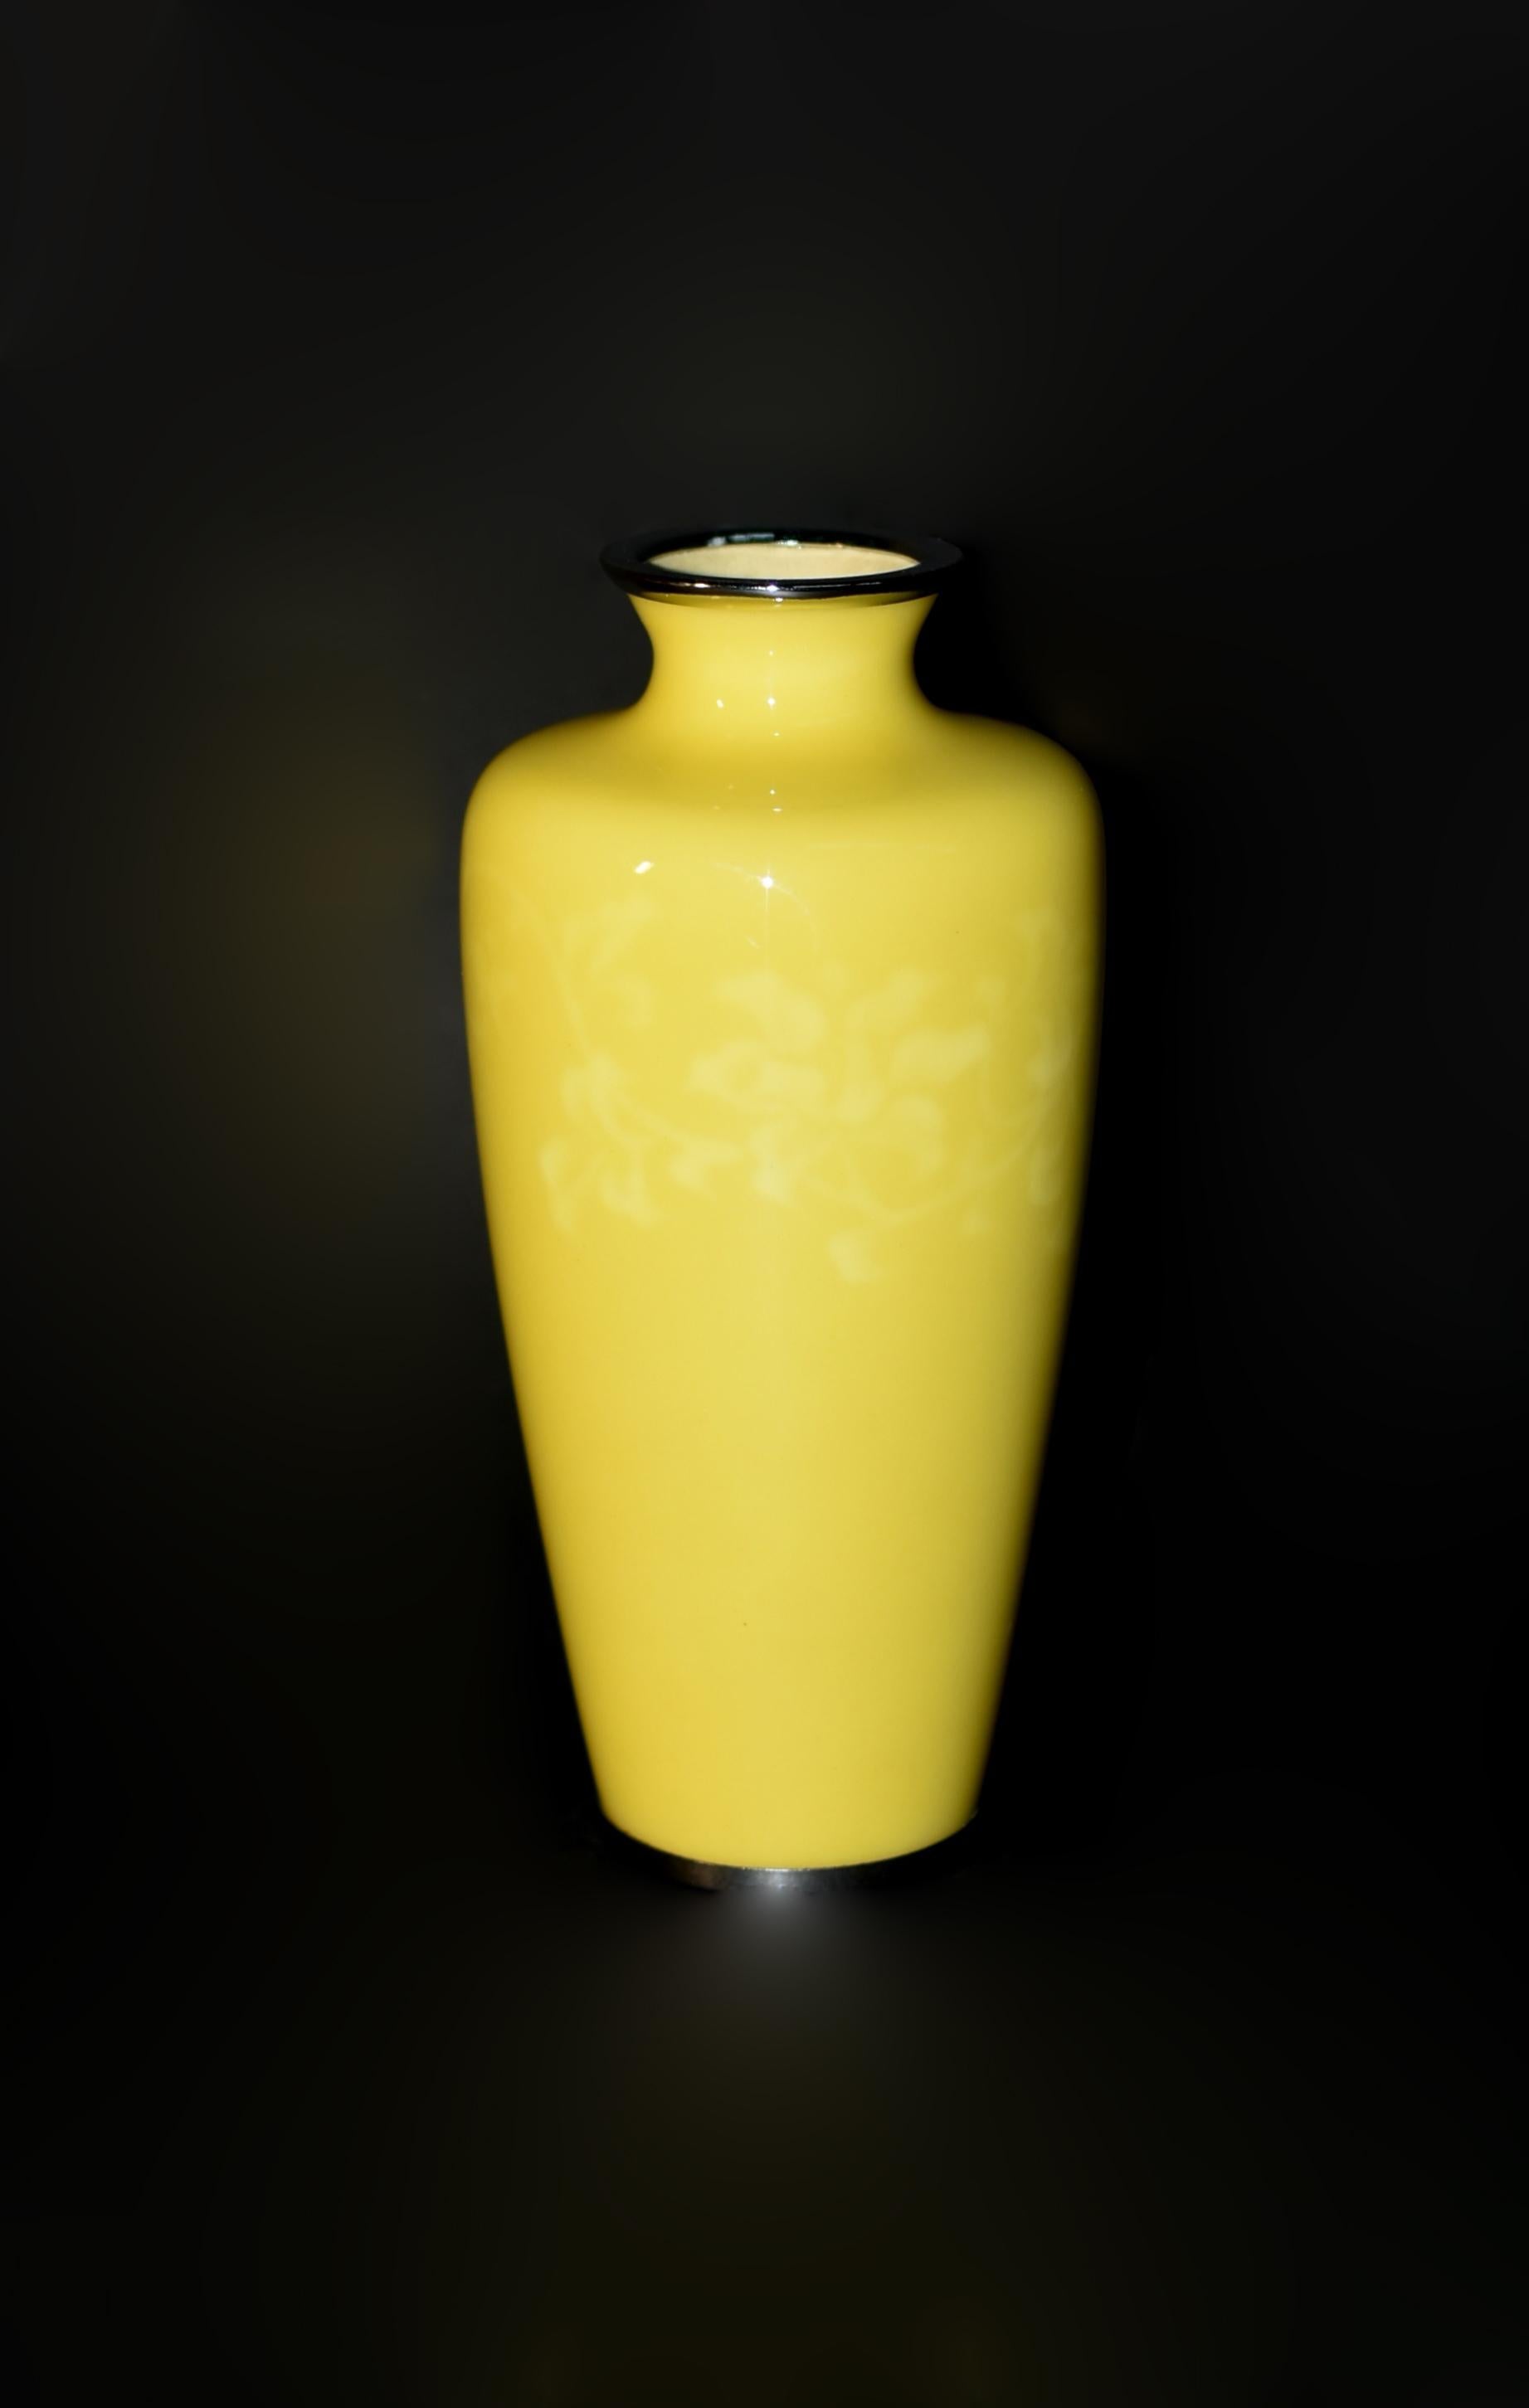 Admirez la beauté remarquable d'un rare vase cloisonné sans fil Ando Jubei. Ce chef-d'œuvre, orné d'un extraordinaire émail jaune canari, représente un motif d'arabesque complexe sous l'émail. En retirant les fils qui auraient autrement retenu